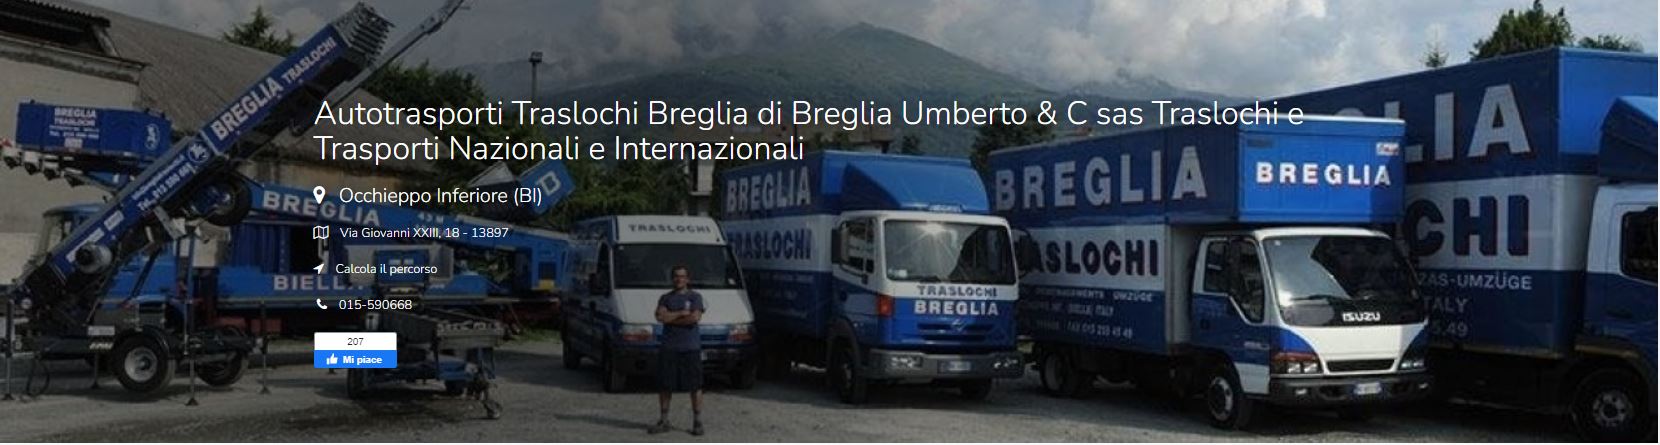 Autotrasporti Traslochi Breglia di Breglia Umberto & C sas Traslochi e Trasporti Nazionali e Internazionali